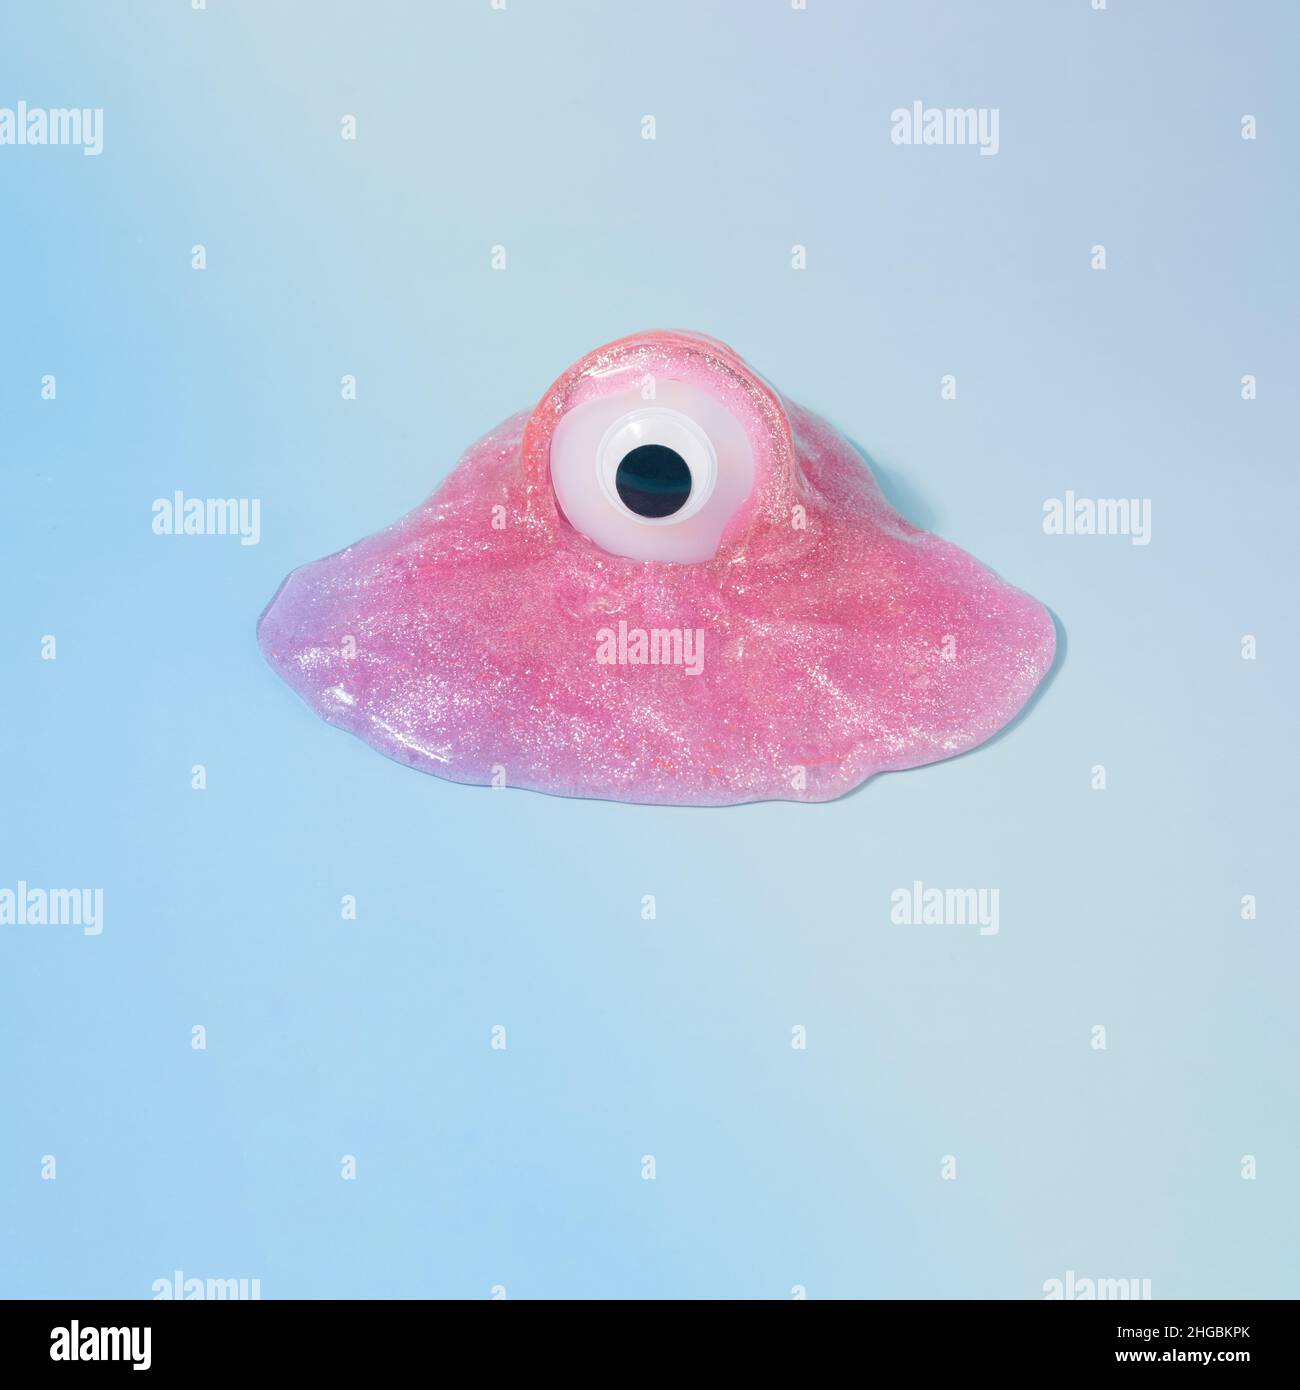 Monsterfigur mit einem Auge in einem rosa Glitzer-Schleim auf einem gradienten blauen Hintergrund. Grippevirus lustiges Konzept. Stockfoto